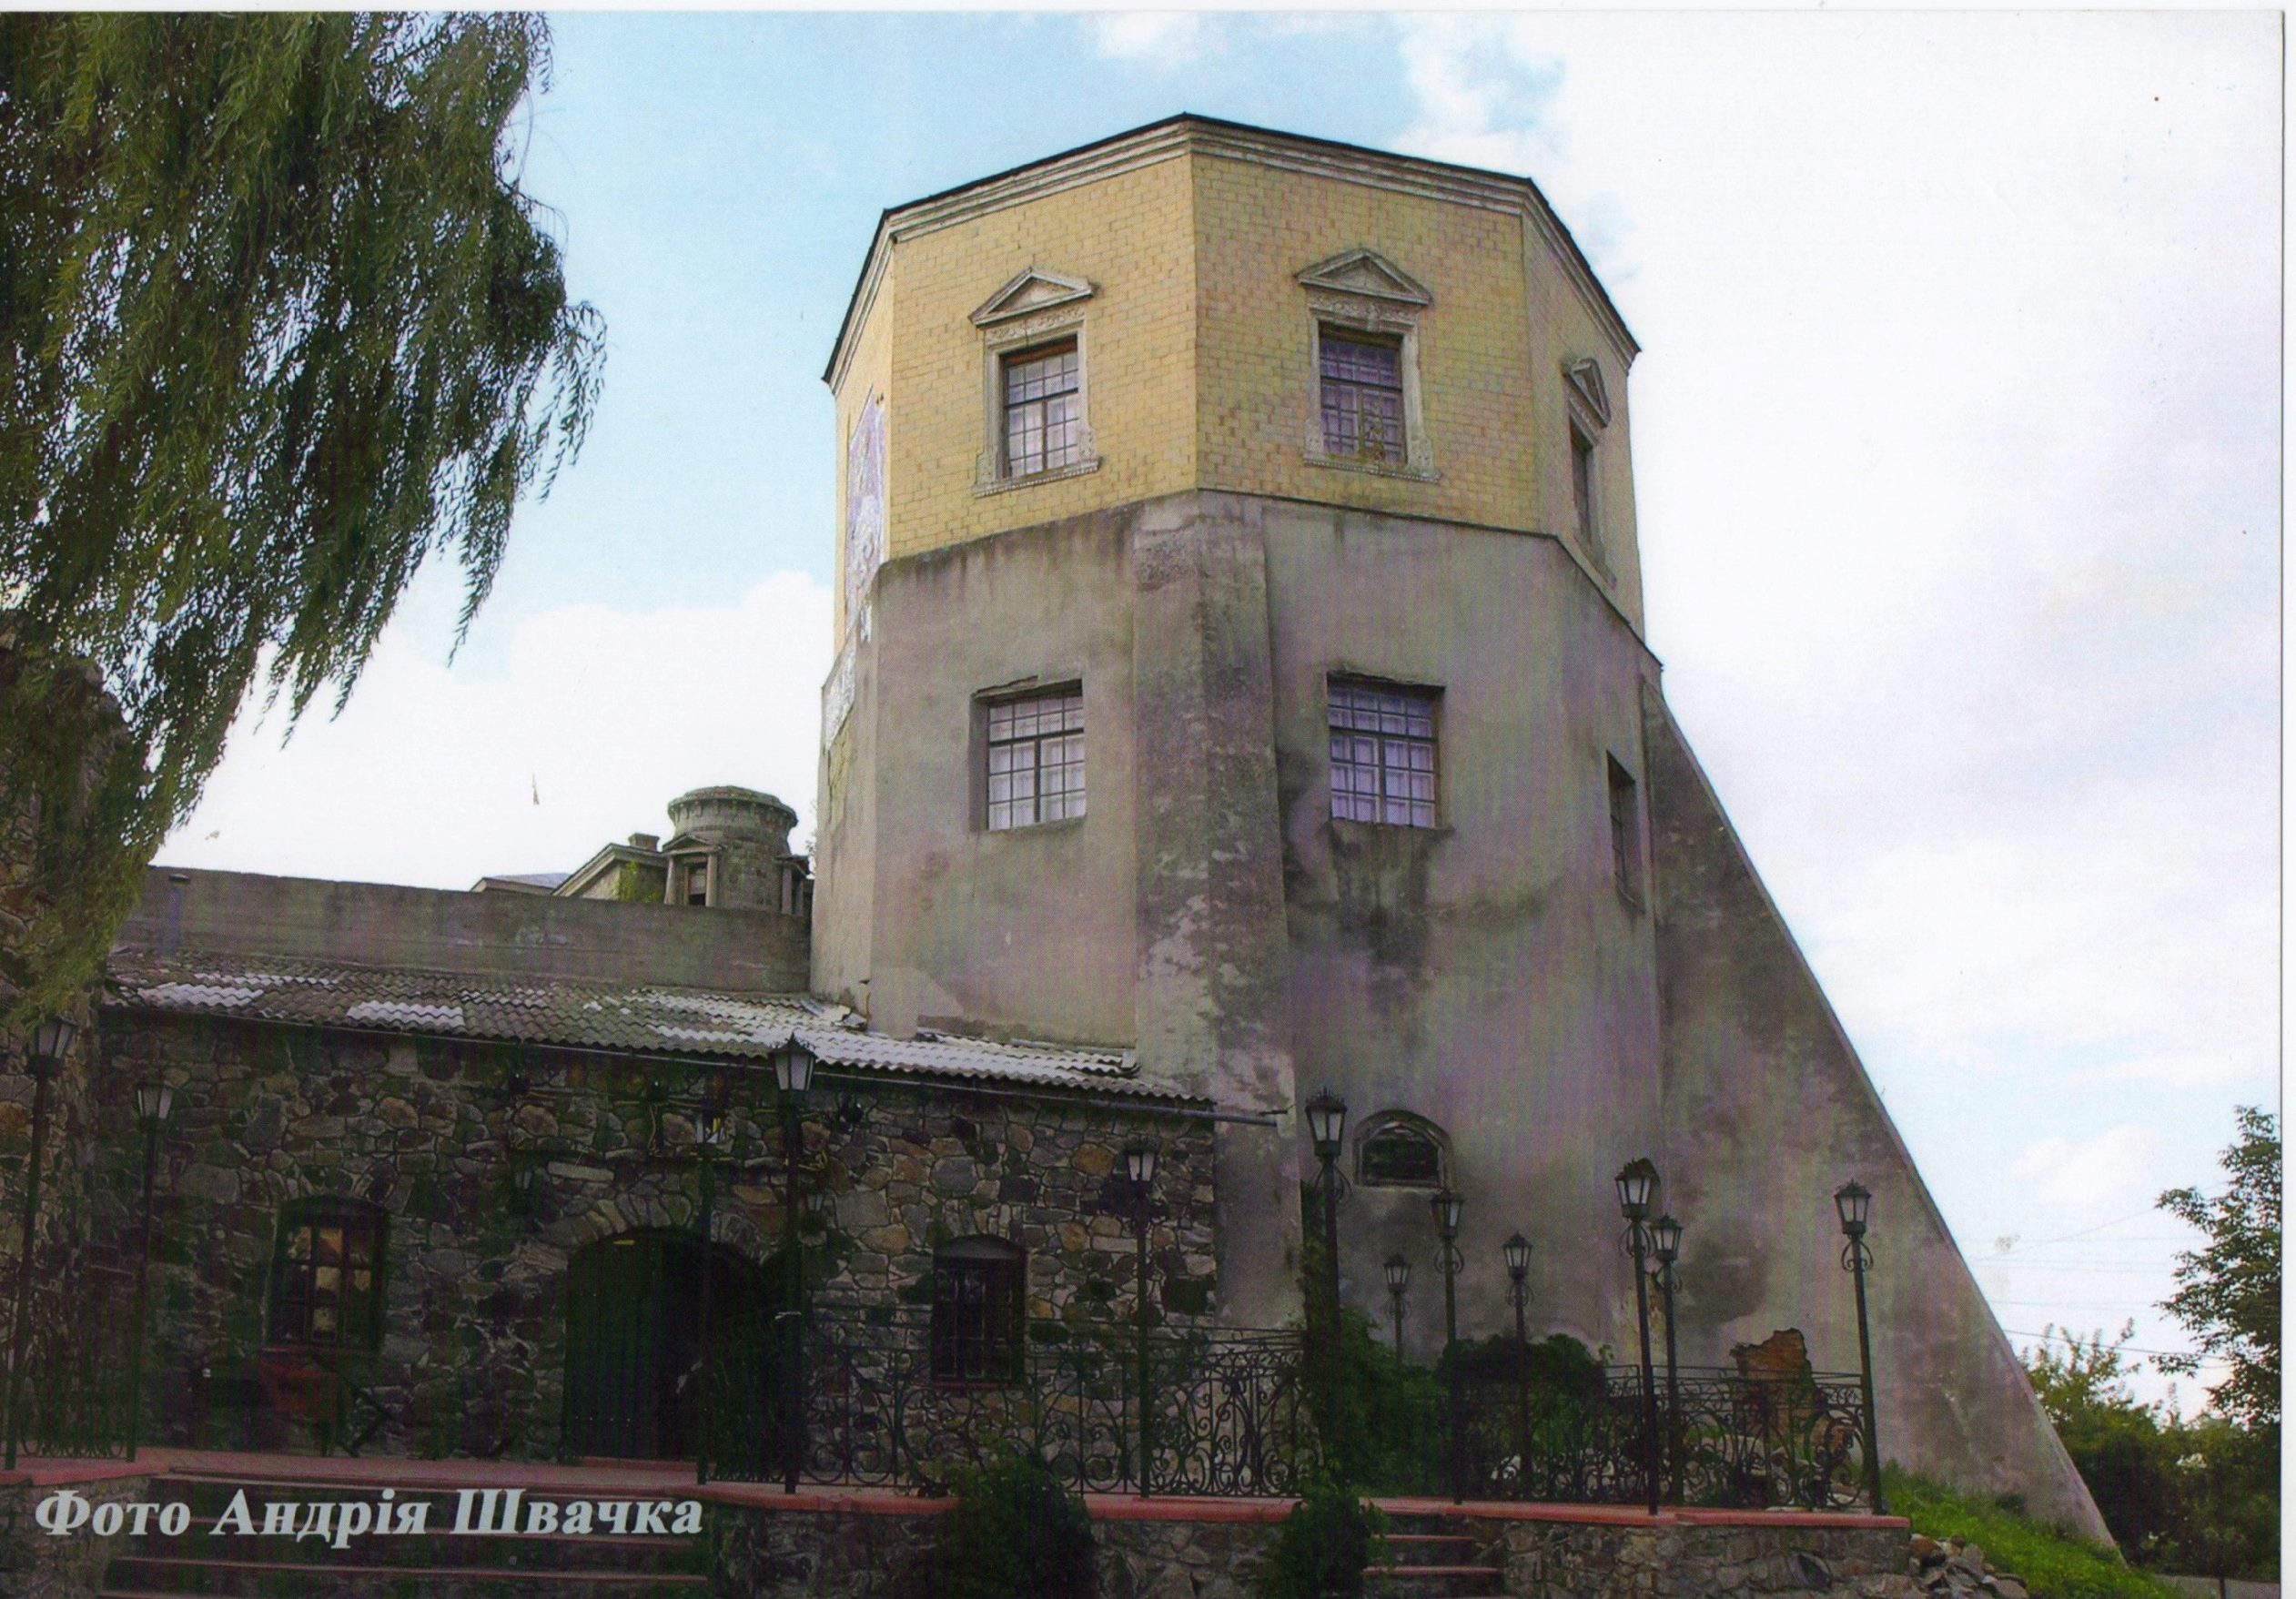 Фотографія "Хмільницький замок. XVI ст. Хмільник. Вінницька область"